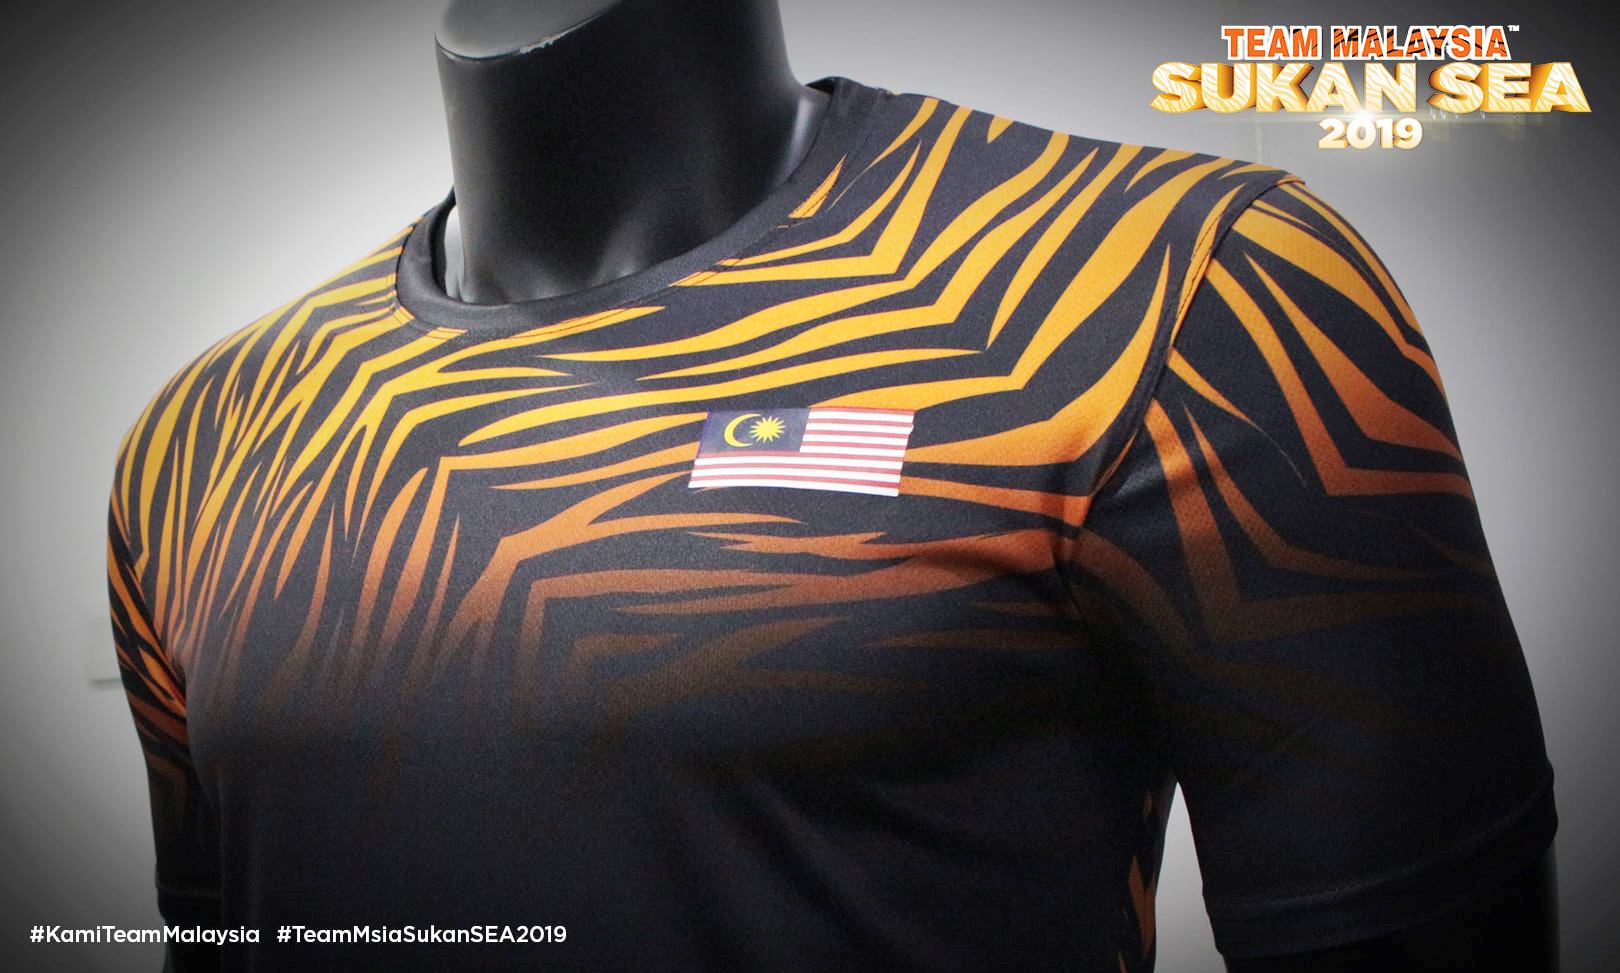 最新虎纹队服的设计，是直接将虎纹延伸到袖子，在此之前的袖子是橘色单色。-摘自Team Malaysia脸书-